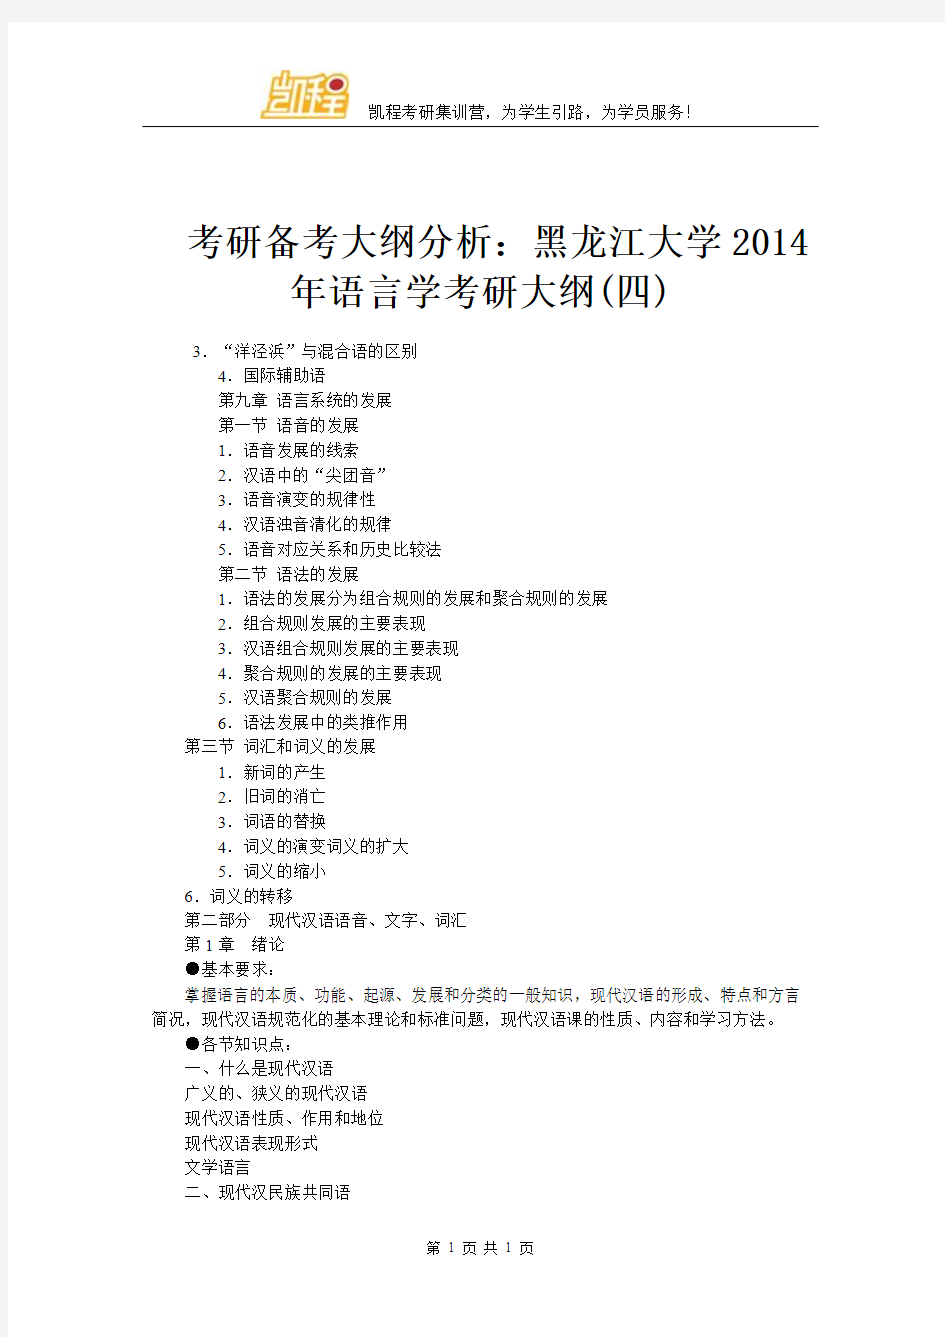 考研备考大纲分析：黑龙江大学2014年语言学考研大纲(四)